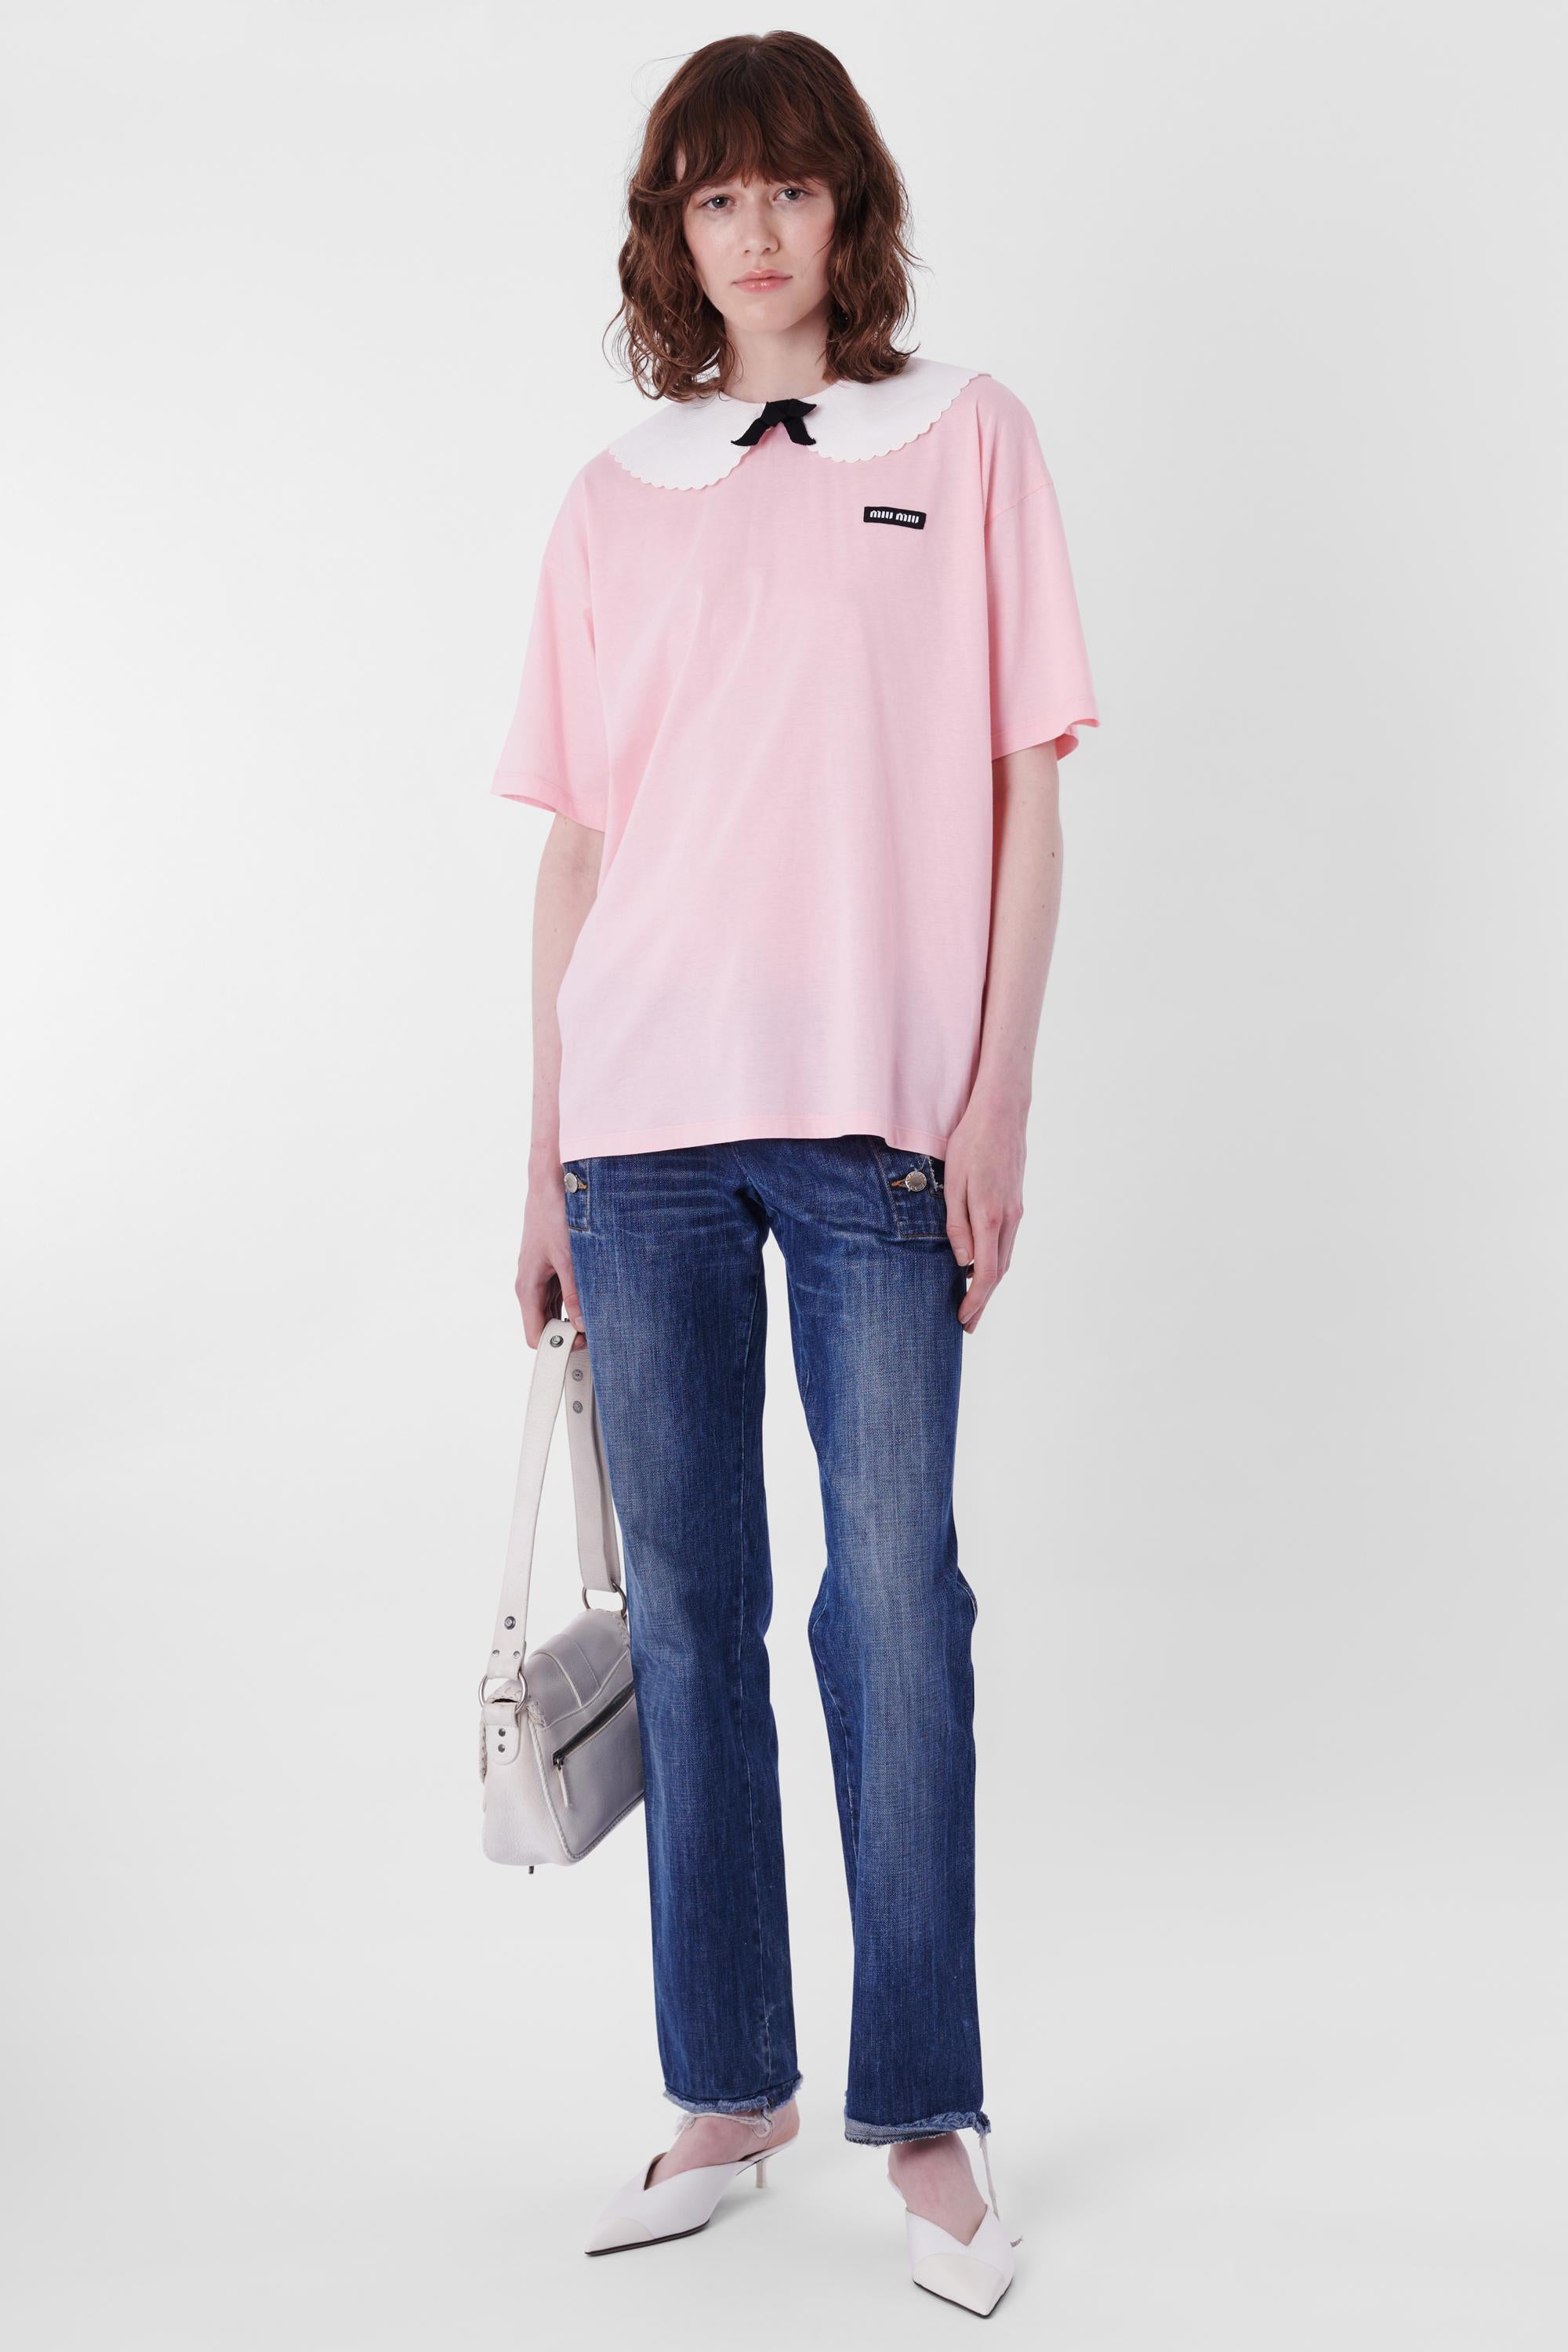 Women's or Men's Miu Miu Pink T-Shirt With Collar